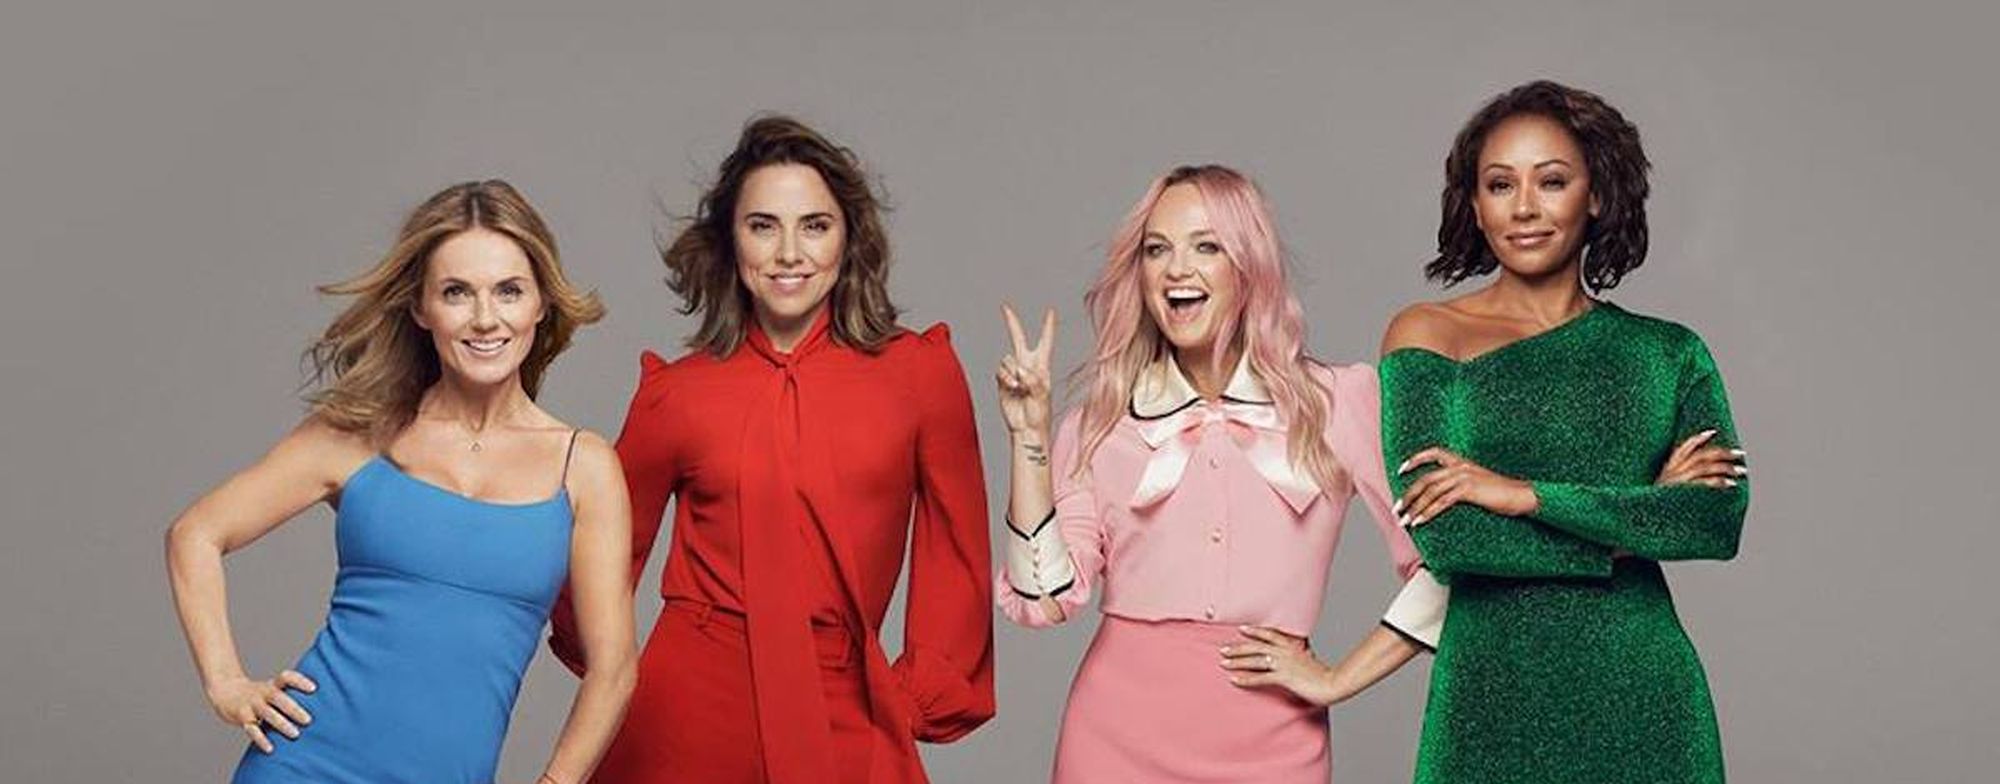 Concerti Spice Girls 2019: città, biglietti, scatella